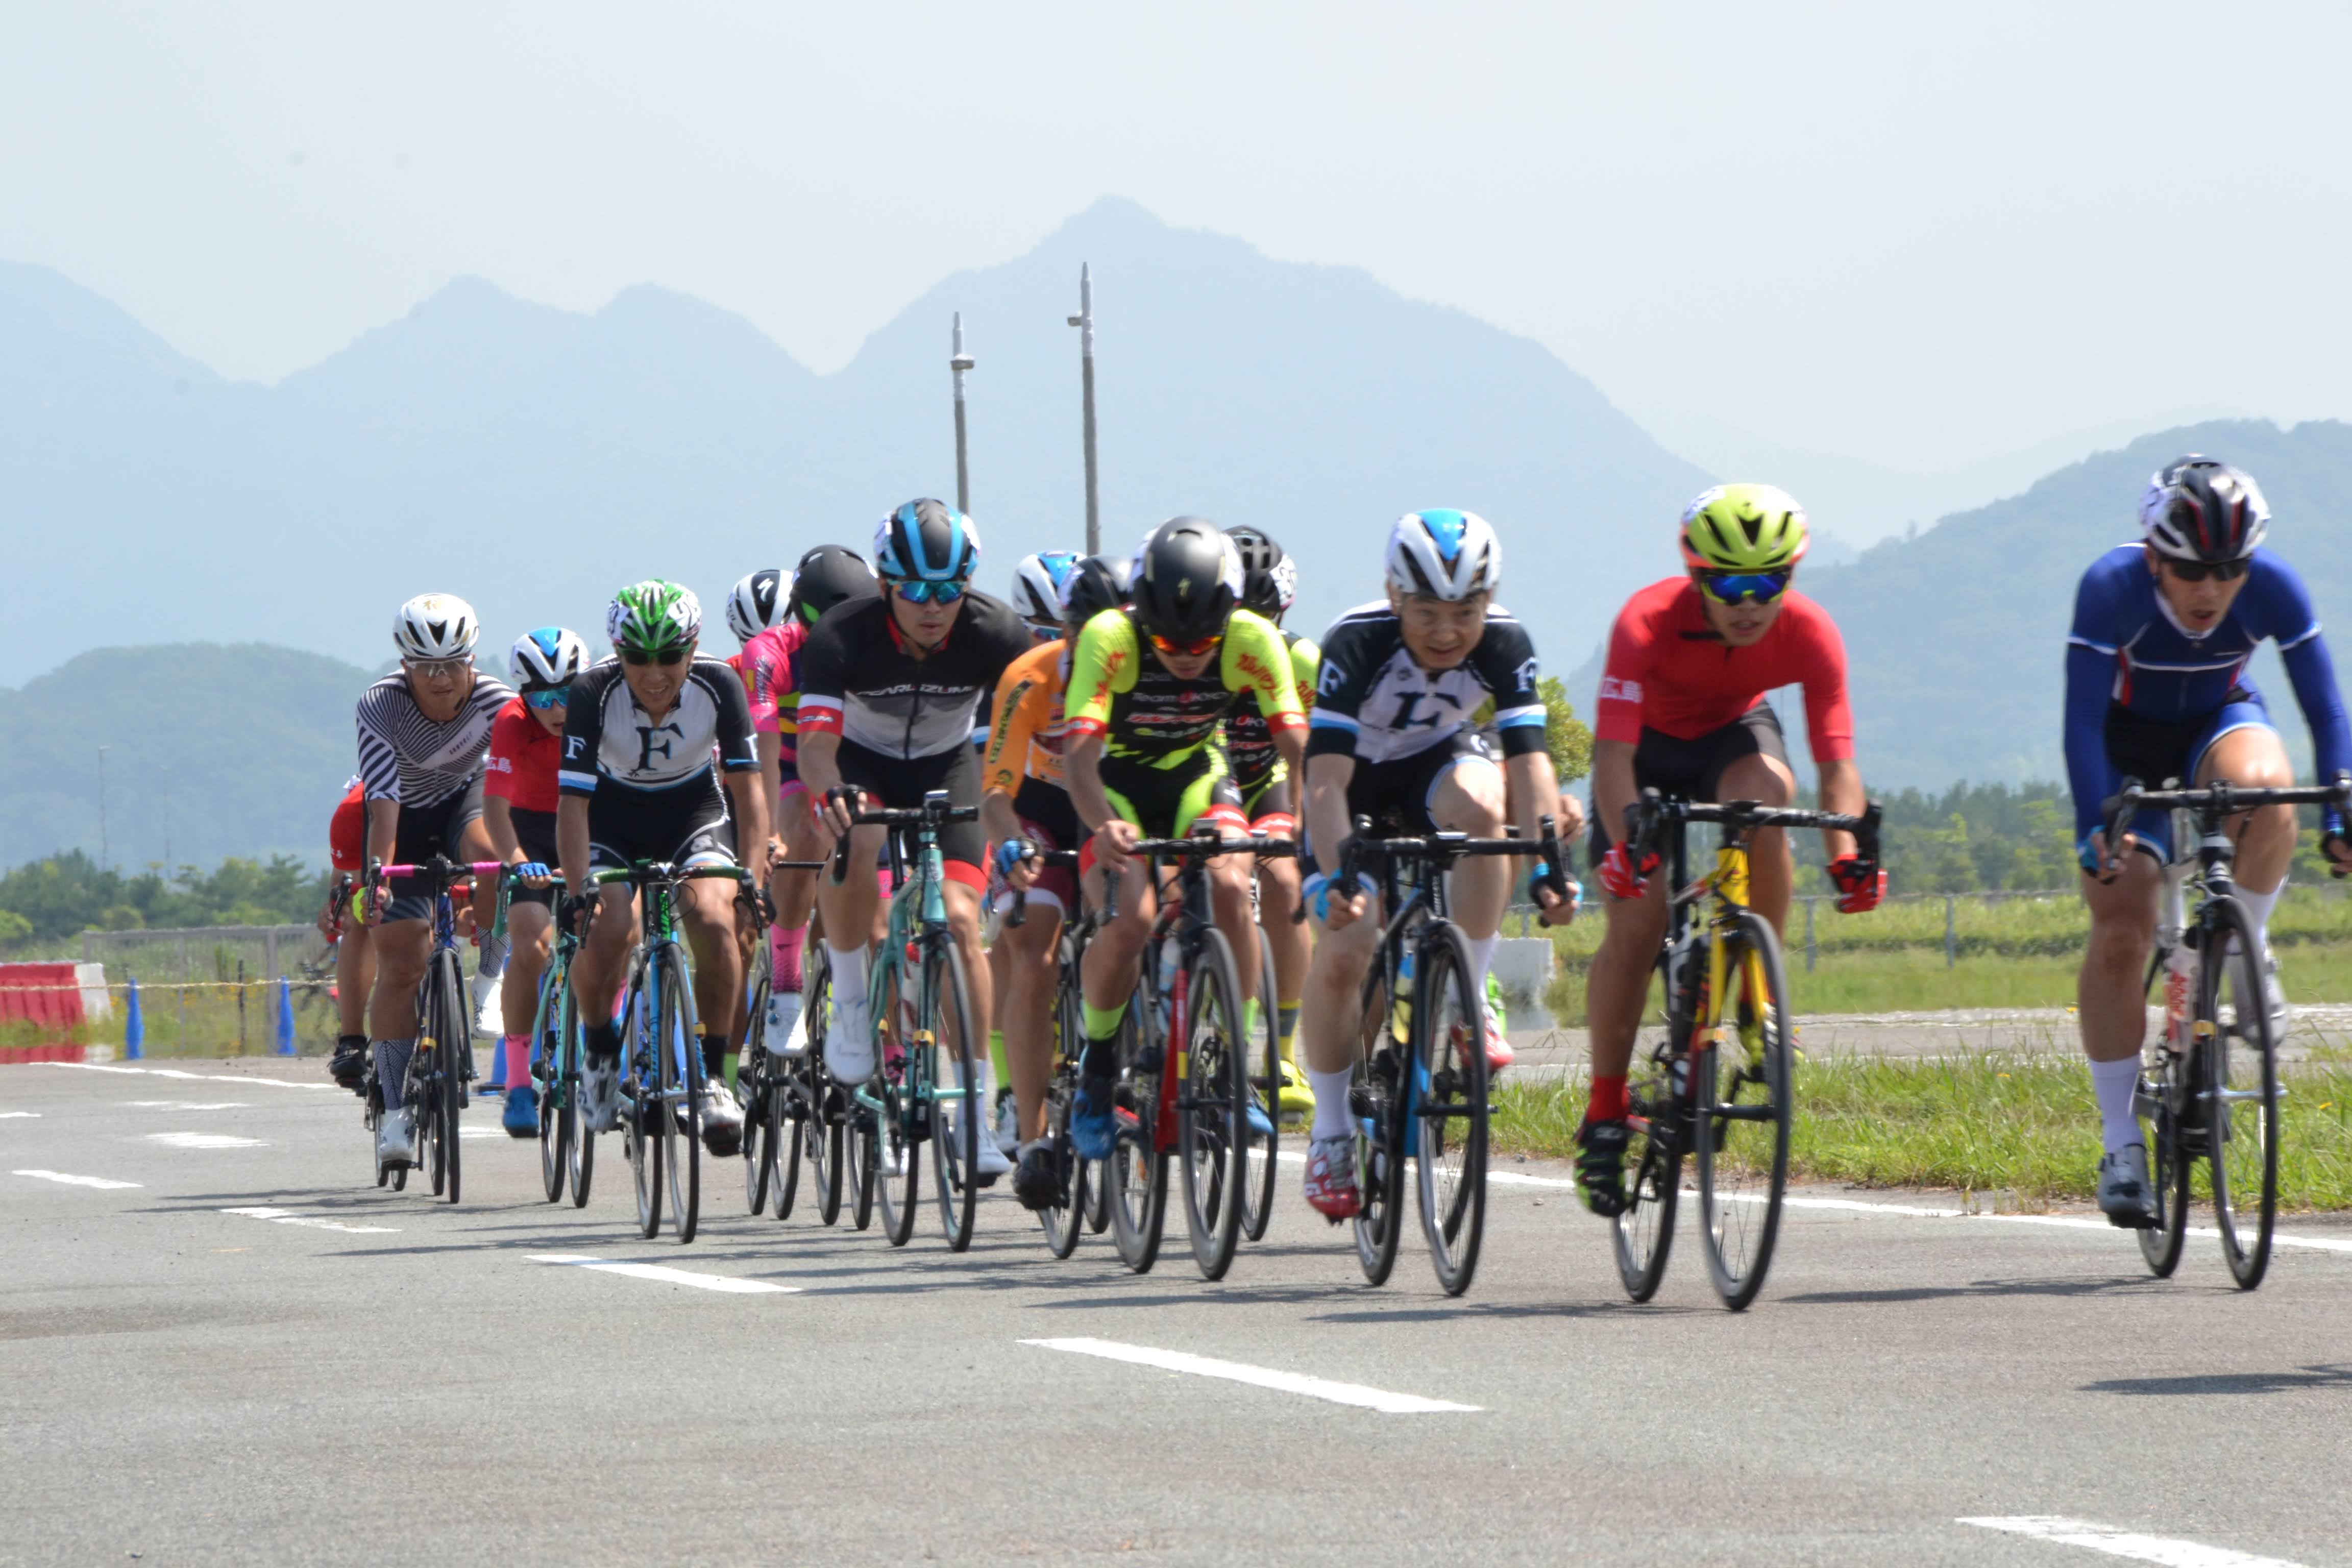 山口県自転車競技連盟 主催イベント きらら浜サイクルミーティング7月大会 7 18 19開催